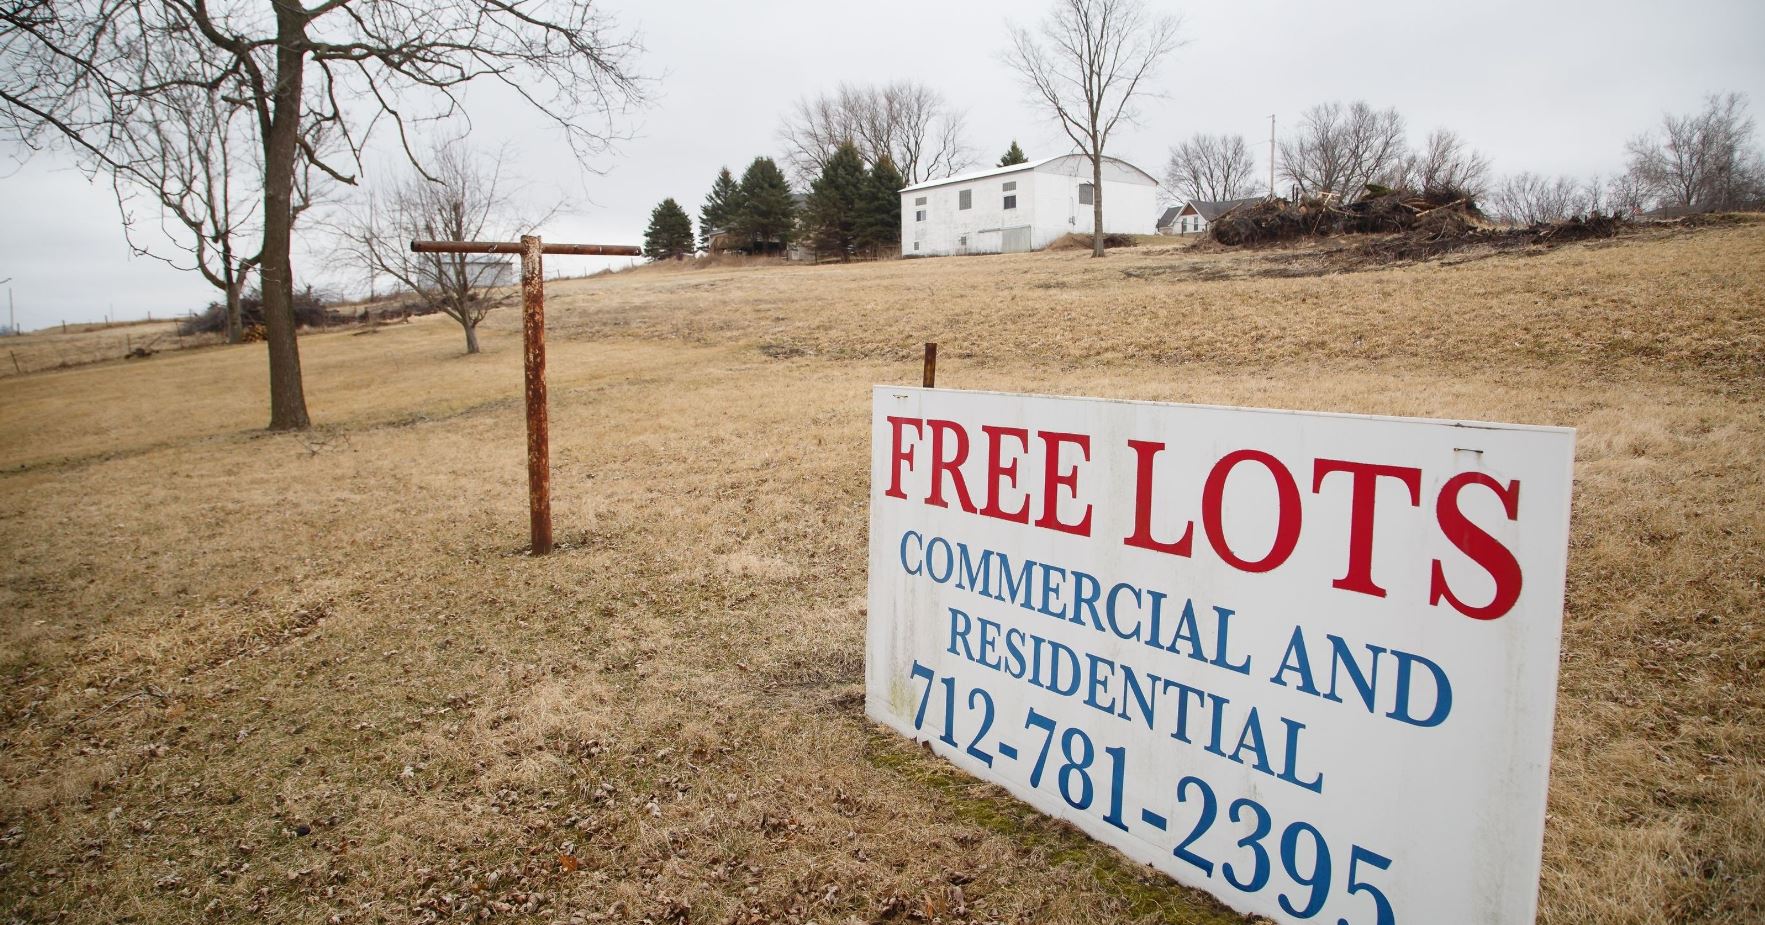 El poblado de Marne, en Iowa, ofrece tierra gratuita para uso comercial y residencial a personas que deseen mudarse (AP Images)